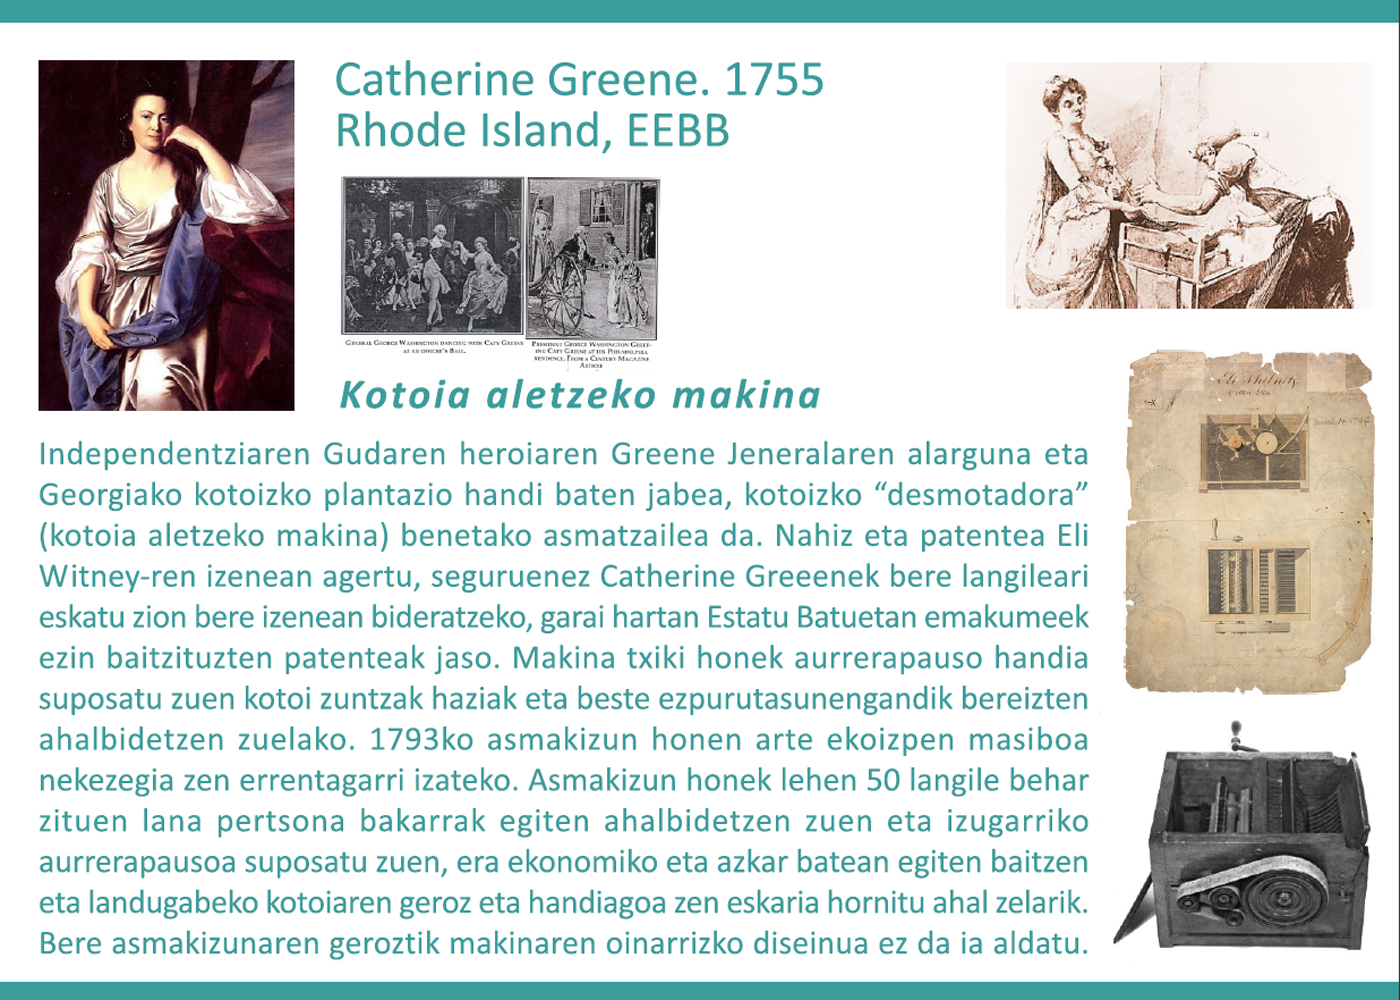 Catherine Green, 1755. Kotoia aletzeko makina